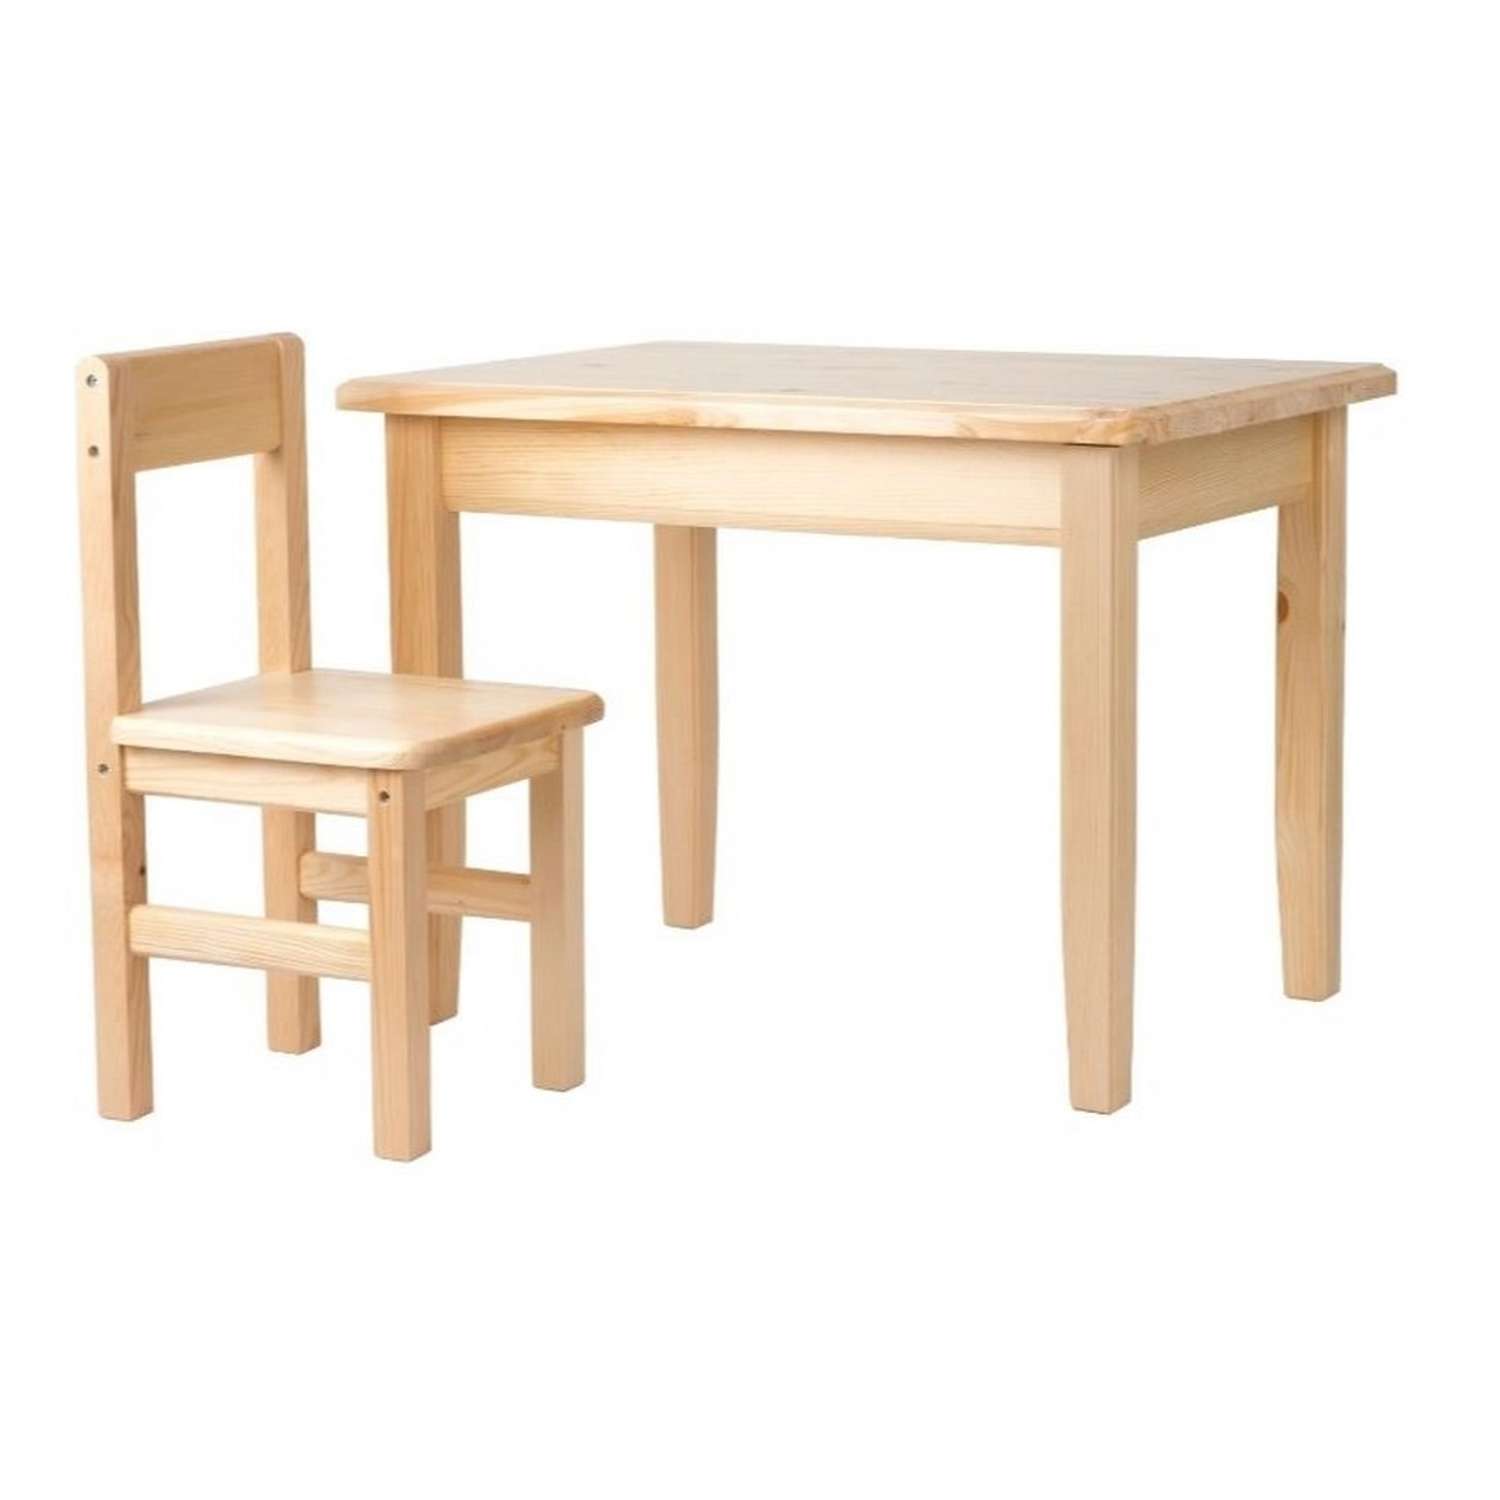 Набор Мебель для дошколят стол со стульчиком для детей от 1 до 3 лет - фото 2